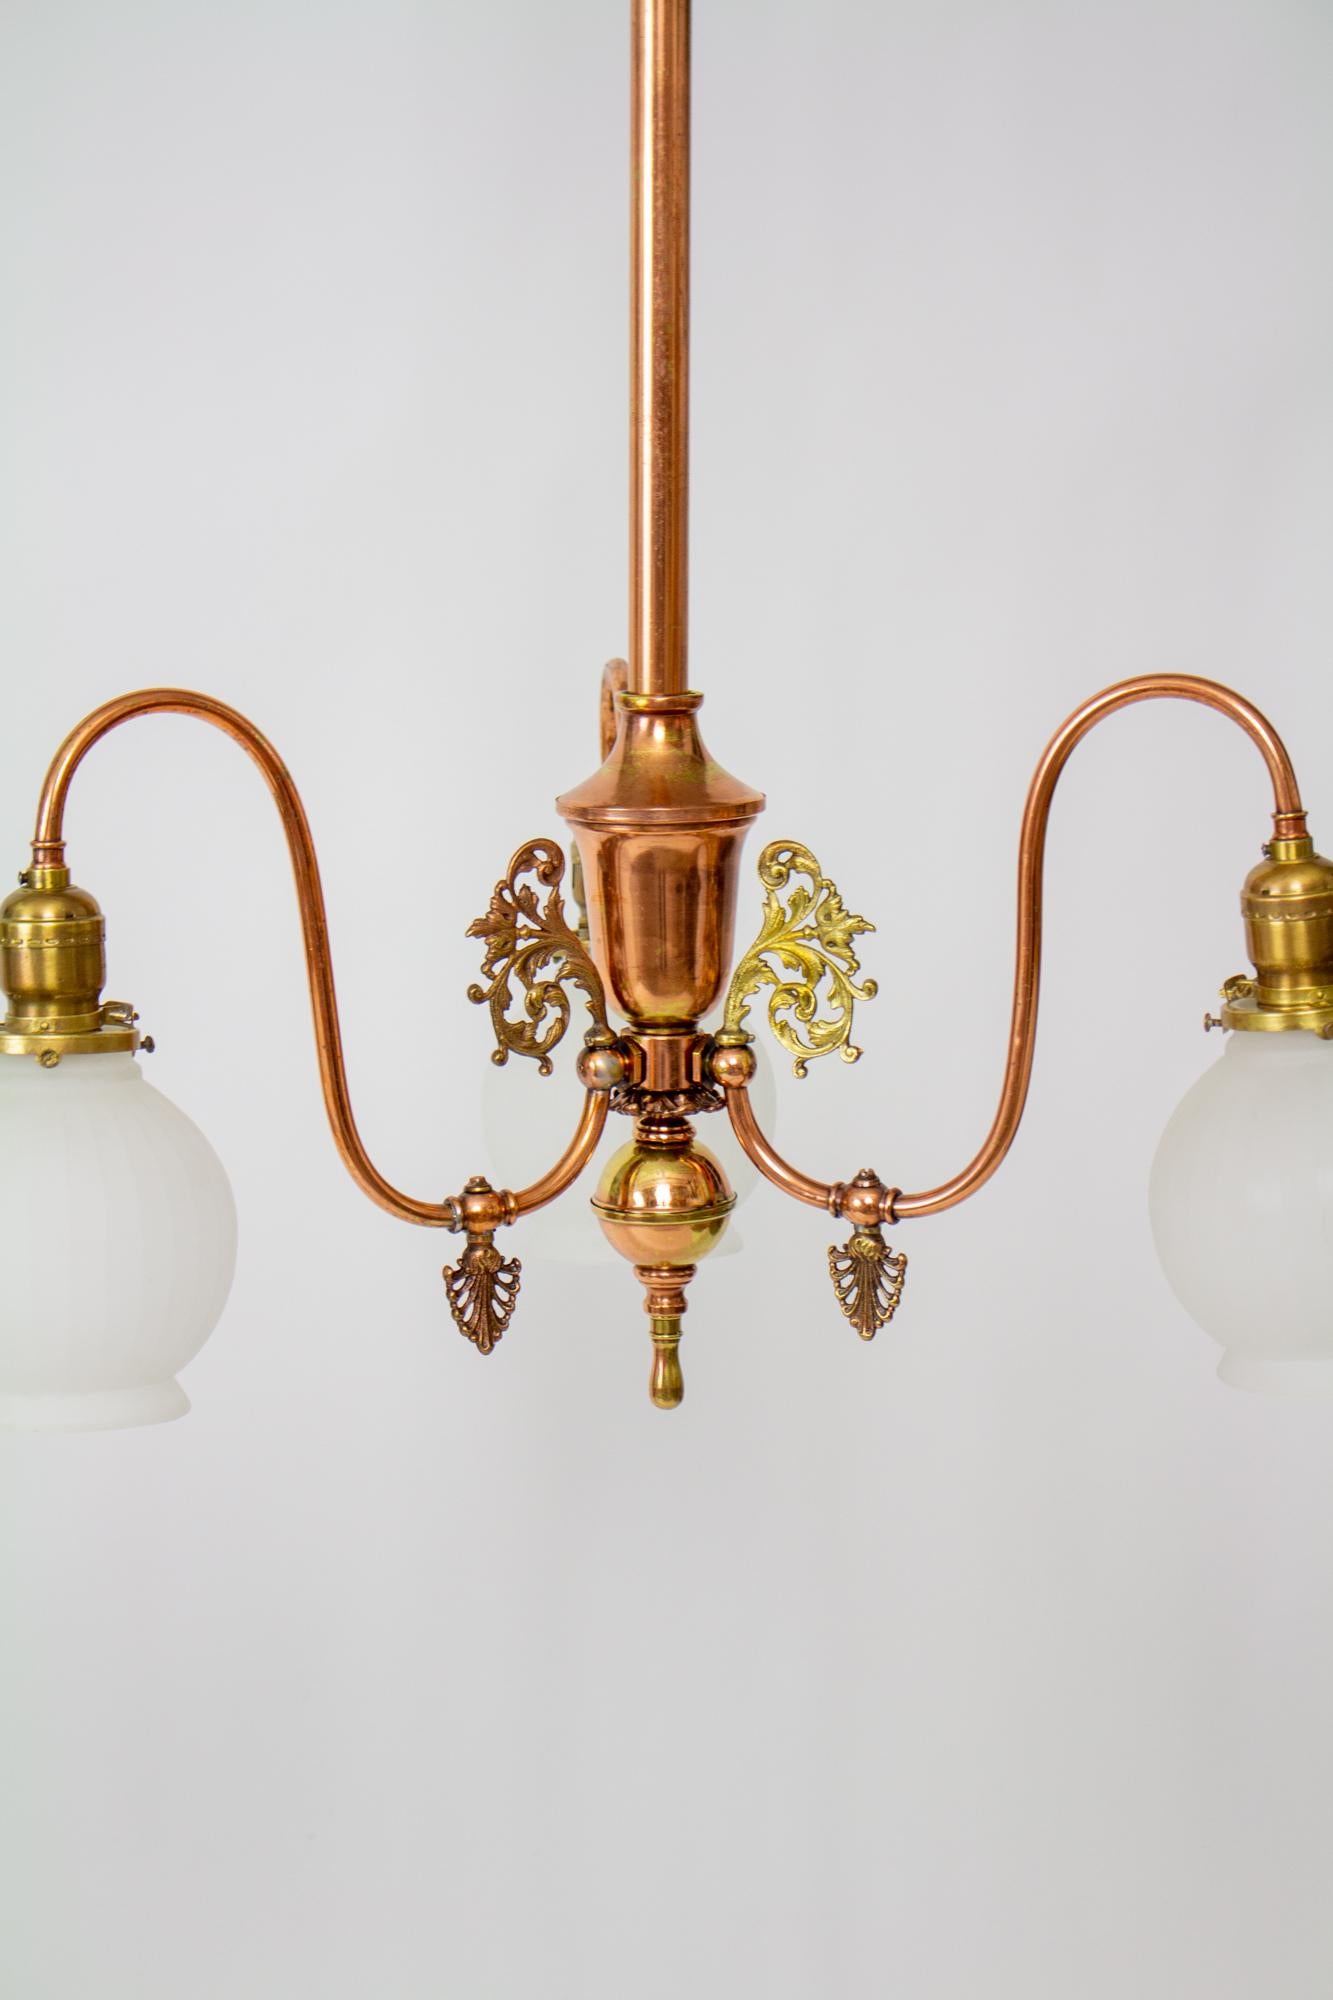 Gasspeicher aus dem 19. Jahrhundert, mit drei nach unten gerichteten Lichtern. Ursprünglich mit nach unten gerichteten Welsbach-Mantelbrennern entworfen, jetzt elektrifiziert mit 2 ¼-Clamp-Schirmhaltern aus dem späten 19. Die originalen Gashähne